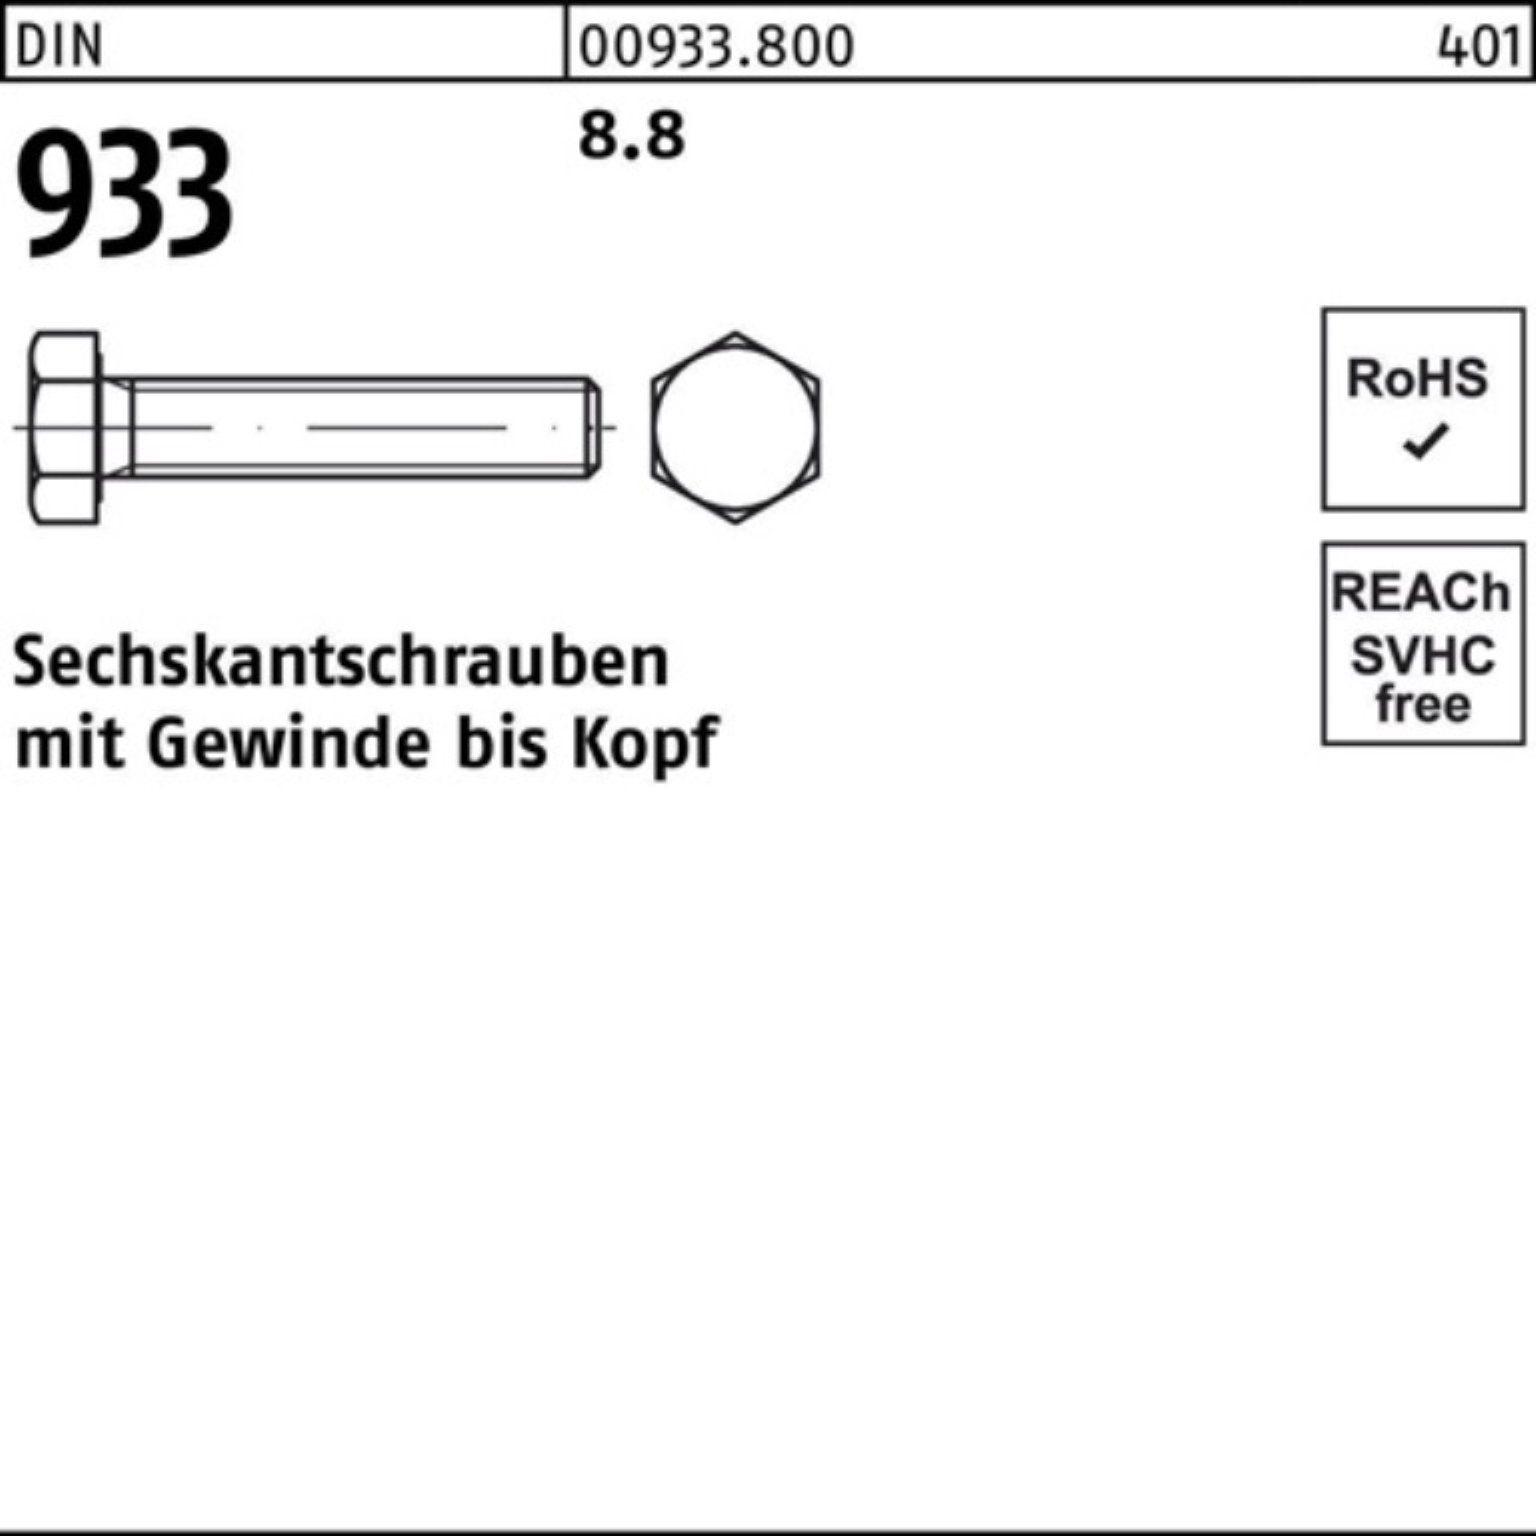 Reyher Sechskantschraube 933 8 M6x 100er Pack 933 Stück DIN VG 100 8 8.8 DIN Sechskantschraube